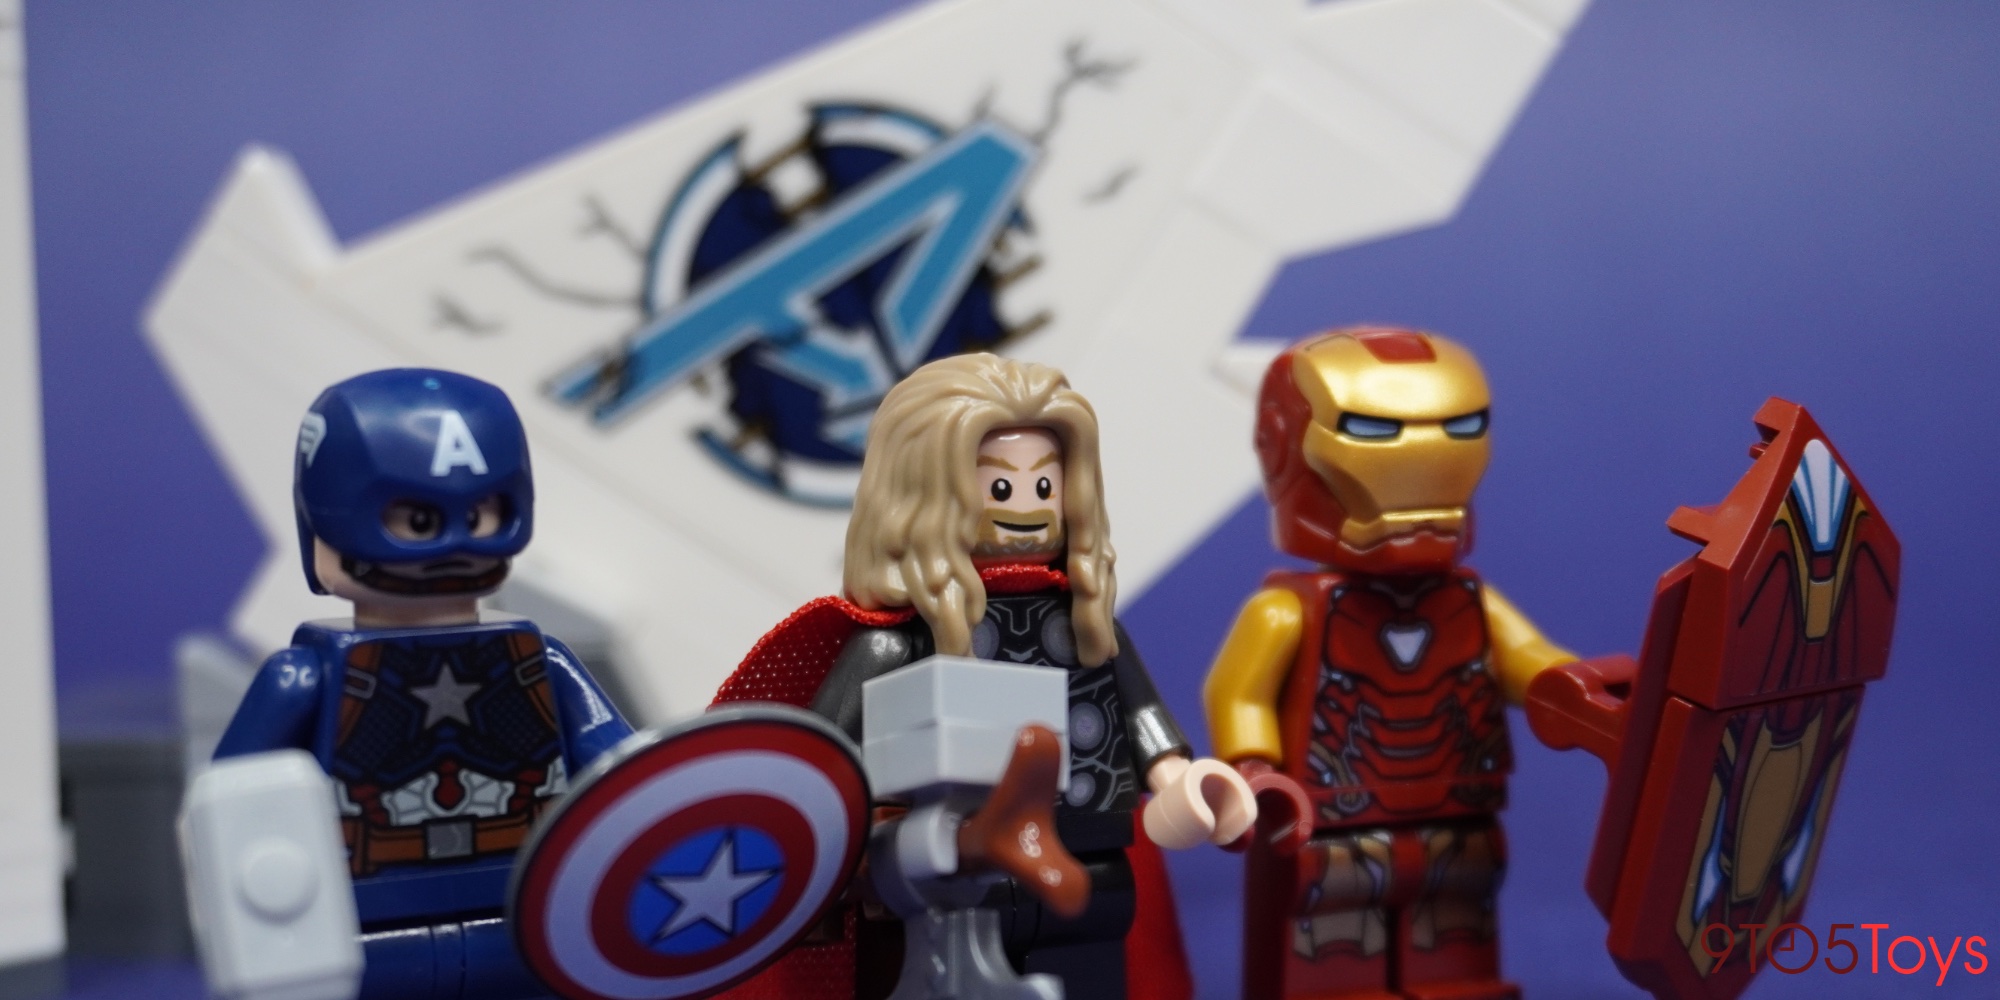 Custom Marvel Avengers Villain Thanos End Game Minifigure Fits Lego US SELLER 